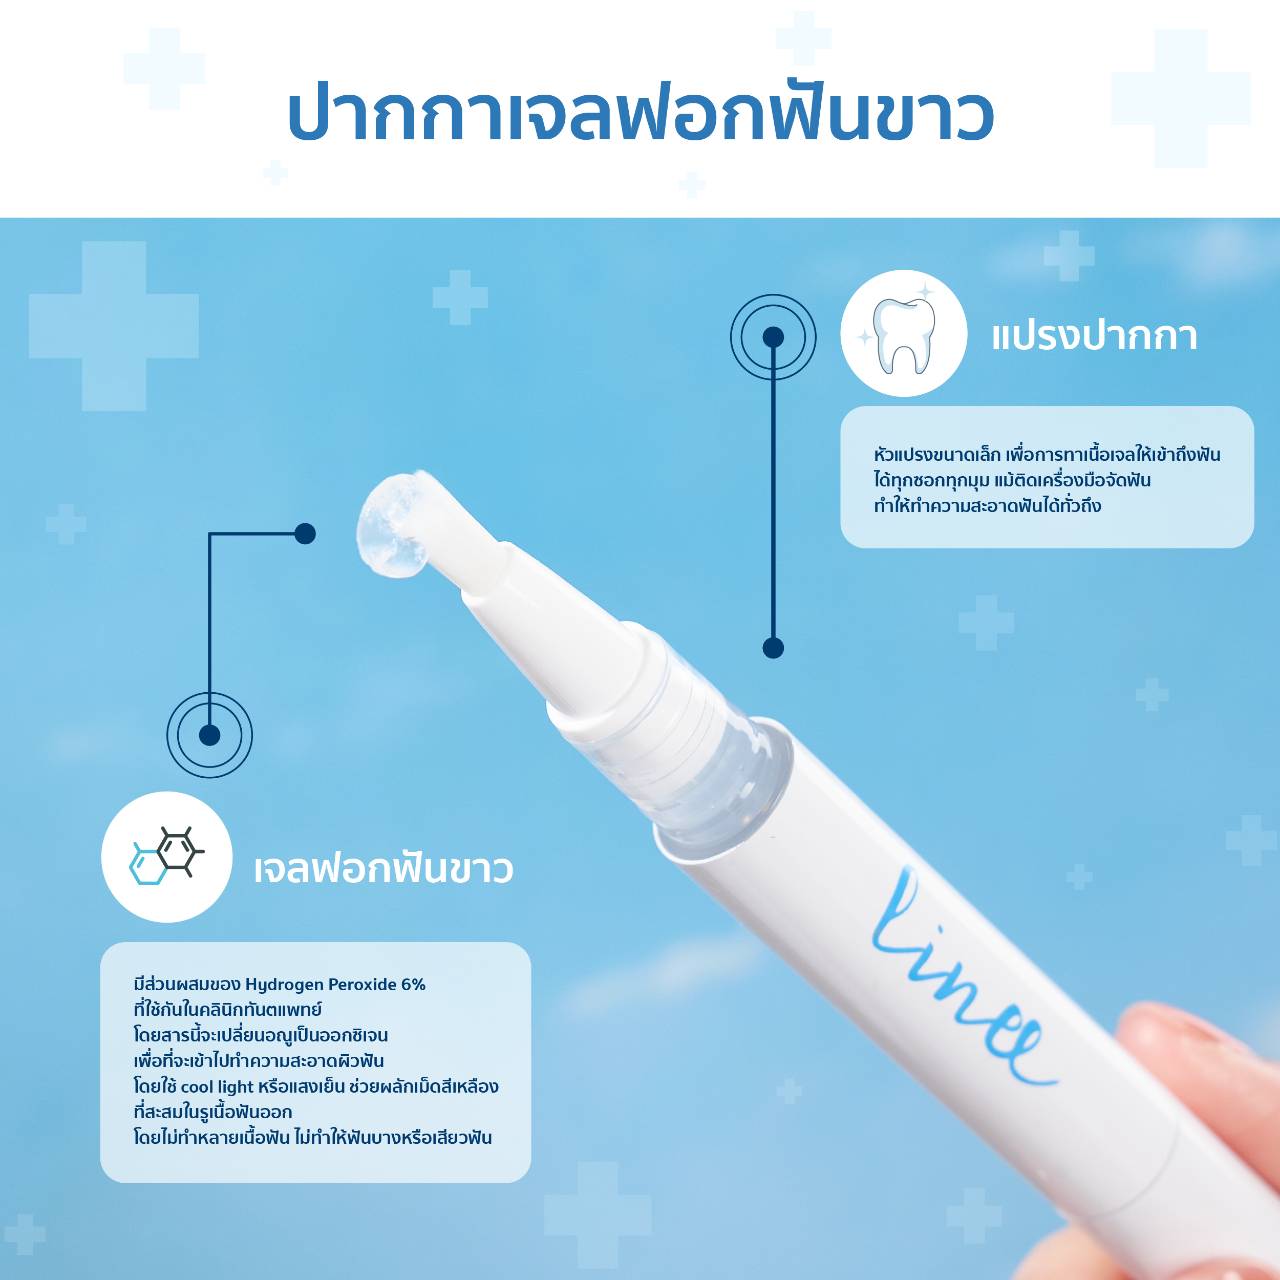 ชุดอุปกรณ์ฟอกฟันขาว ลินี Linee Teeth Whitening kit  Premium  นวัตกรรมใหม่ ระบบแสงไฟอัตโนมัติ 2 ระบบ